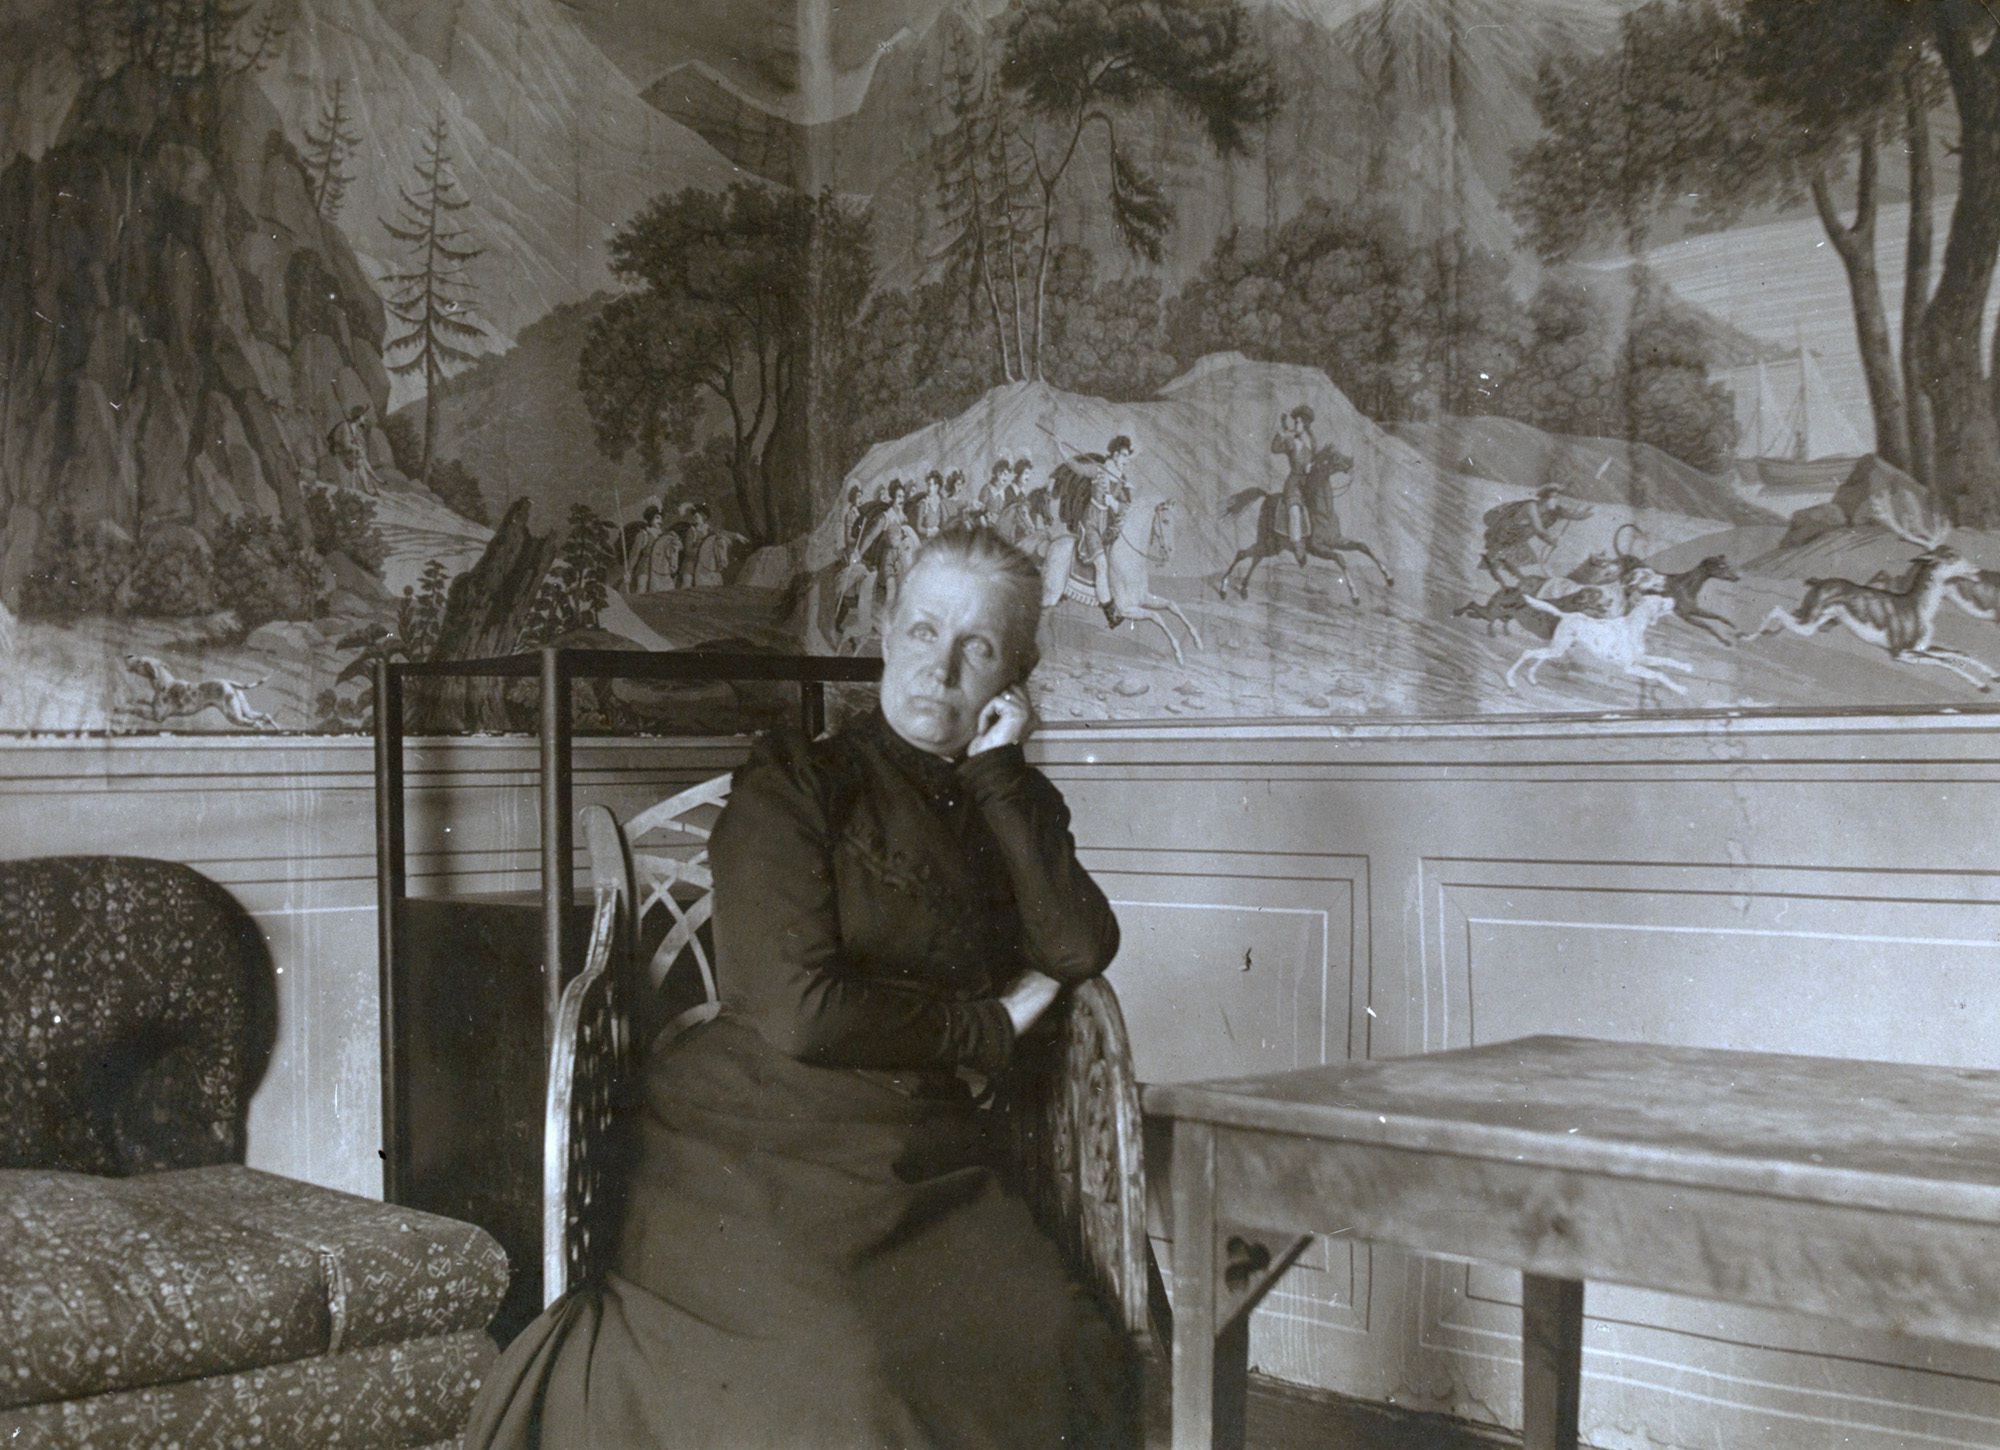 Mustavalkokuvassa Jenny Florin istuu tuolilla huvimajassa. Hänen takanaan näkyy kalusteita sekä huvimajan seinän panoraamatapettia.